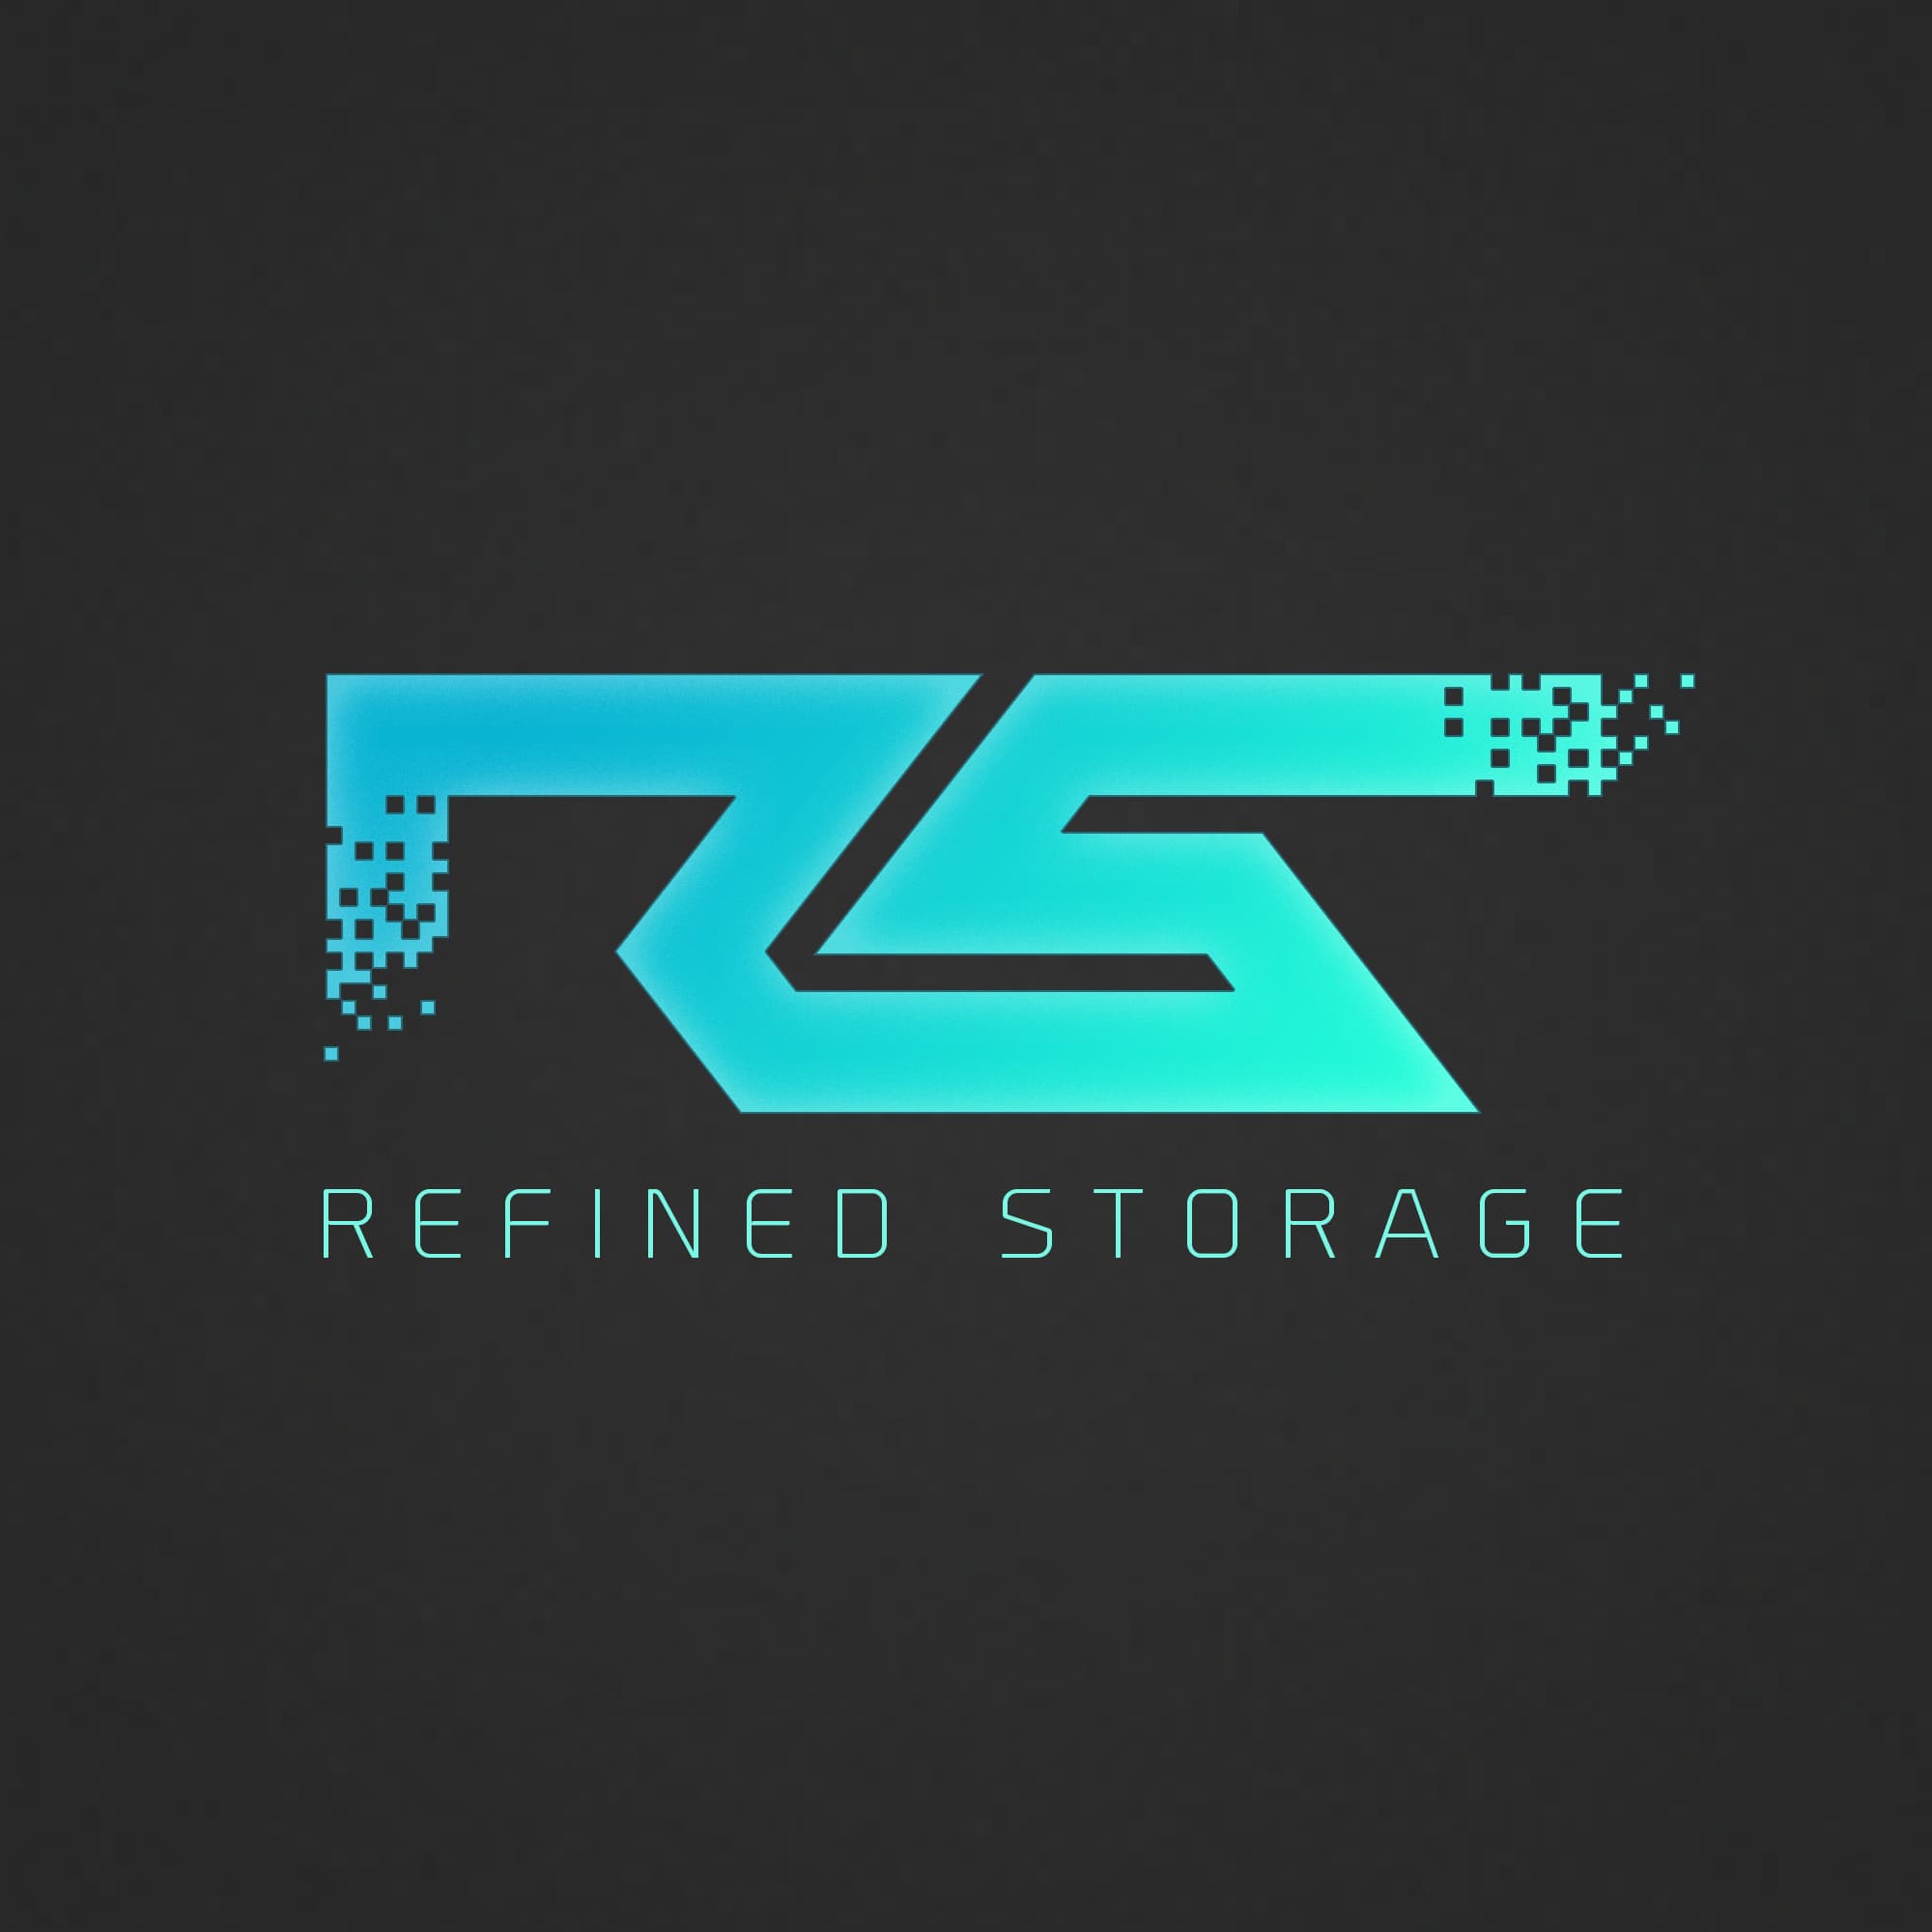 Refined Storage